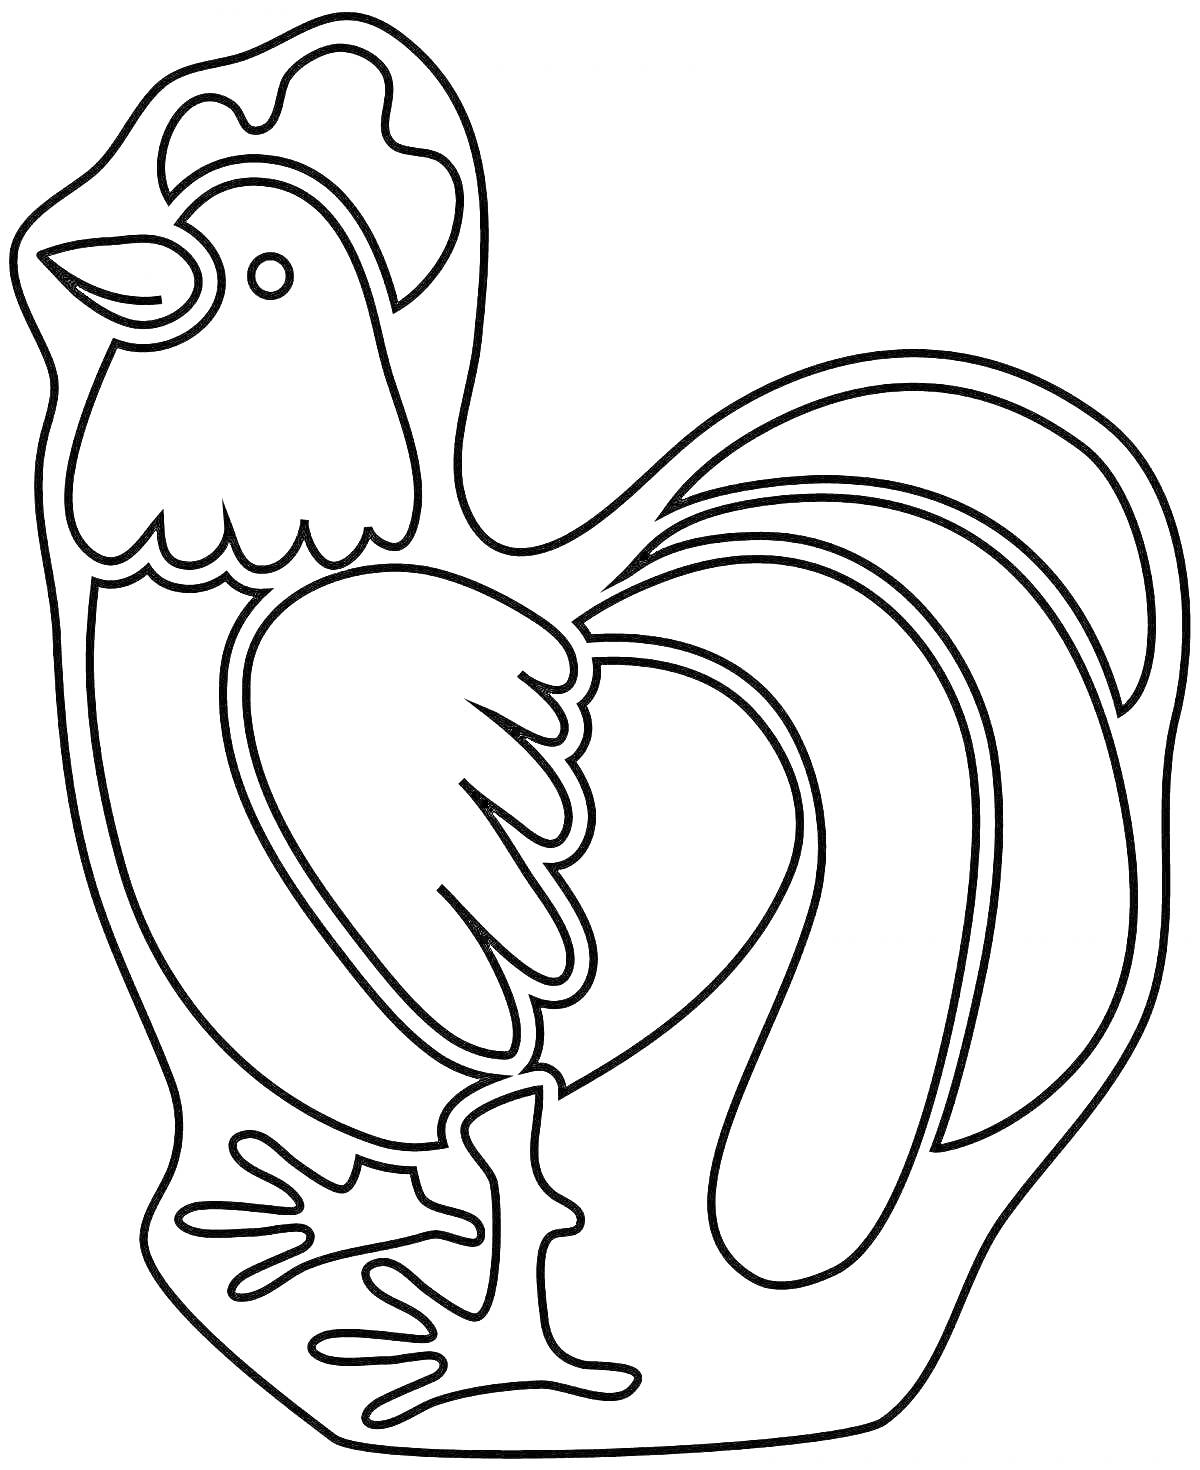 Раскраска Раскраска петух для детей 4-5 лет с гребнем, крыльями, хвостом и ногами